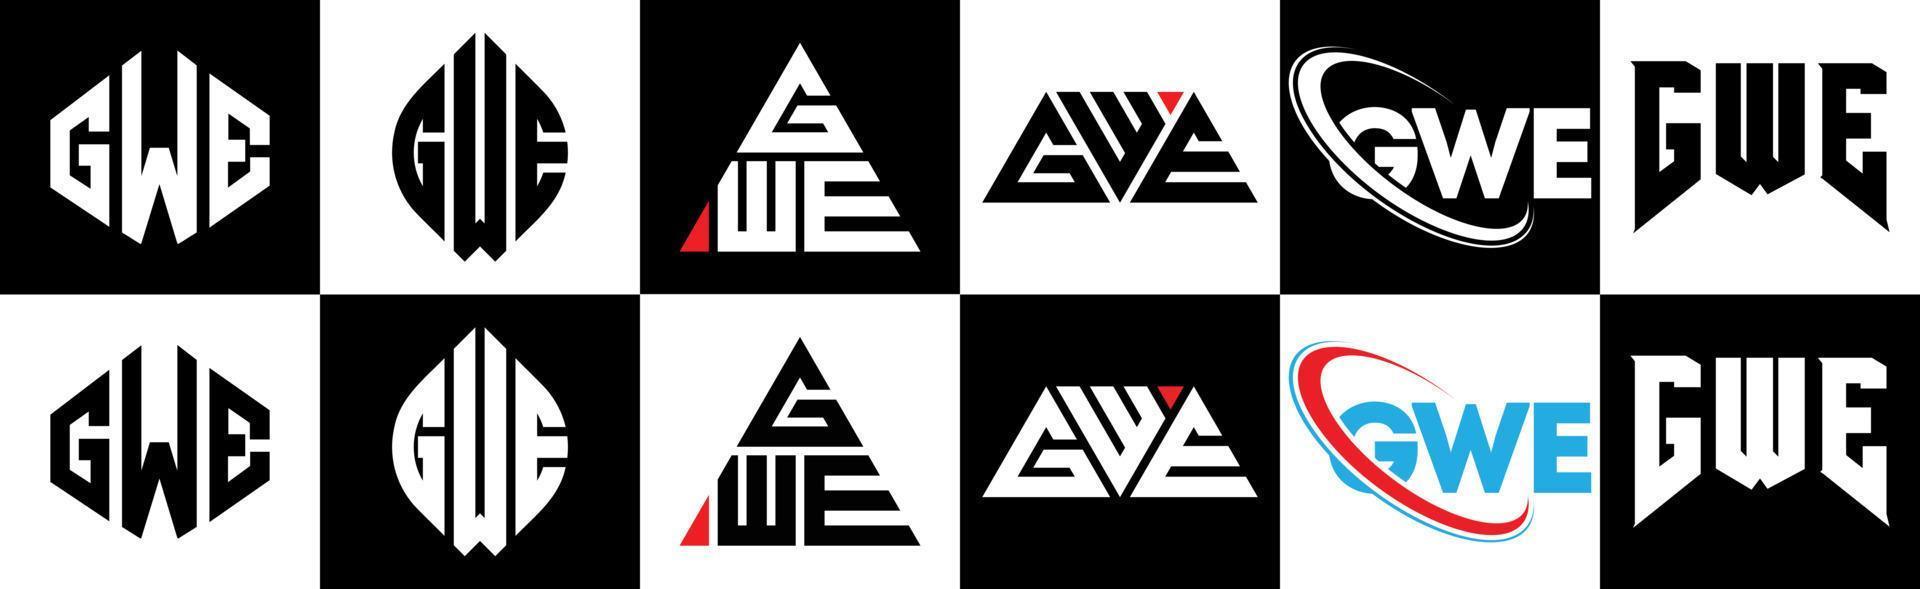 création de logo de lettre gwe en six styles. gwe polygone, cercle, triangle, hexagone, style plat et simple avec logo de lettre de variation de couleur noir et blanc dans un plan de travail. logo minimaliste et classique gwe vecteur